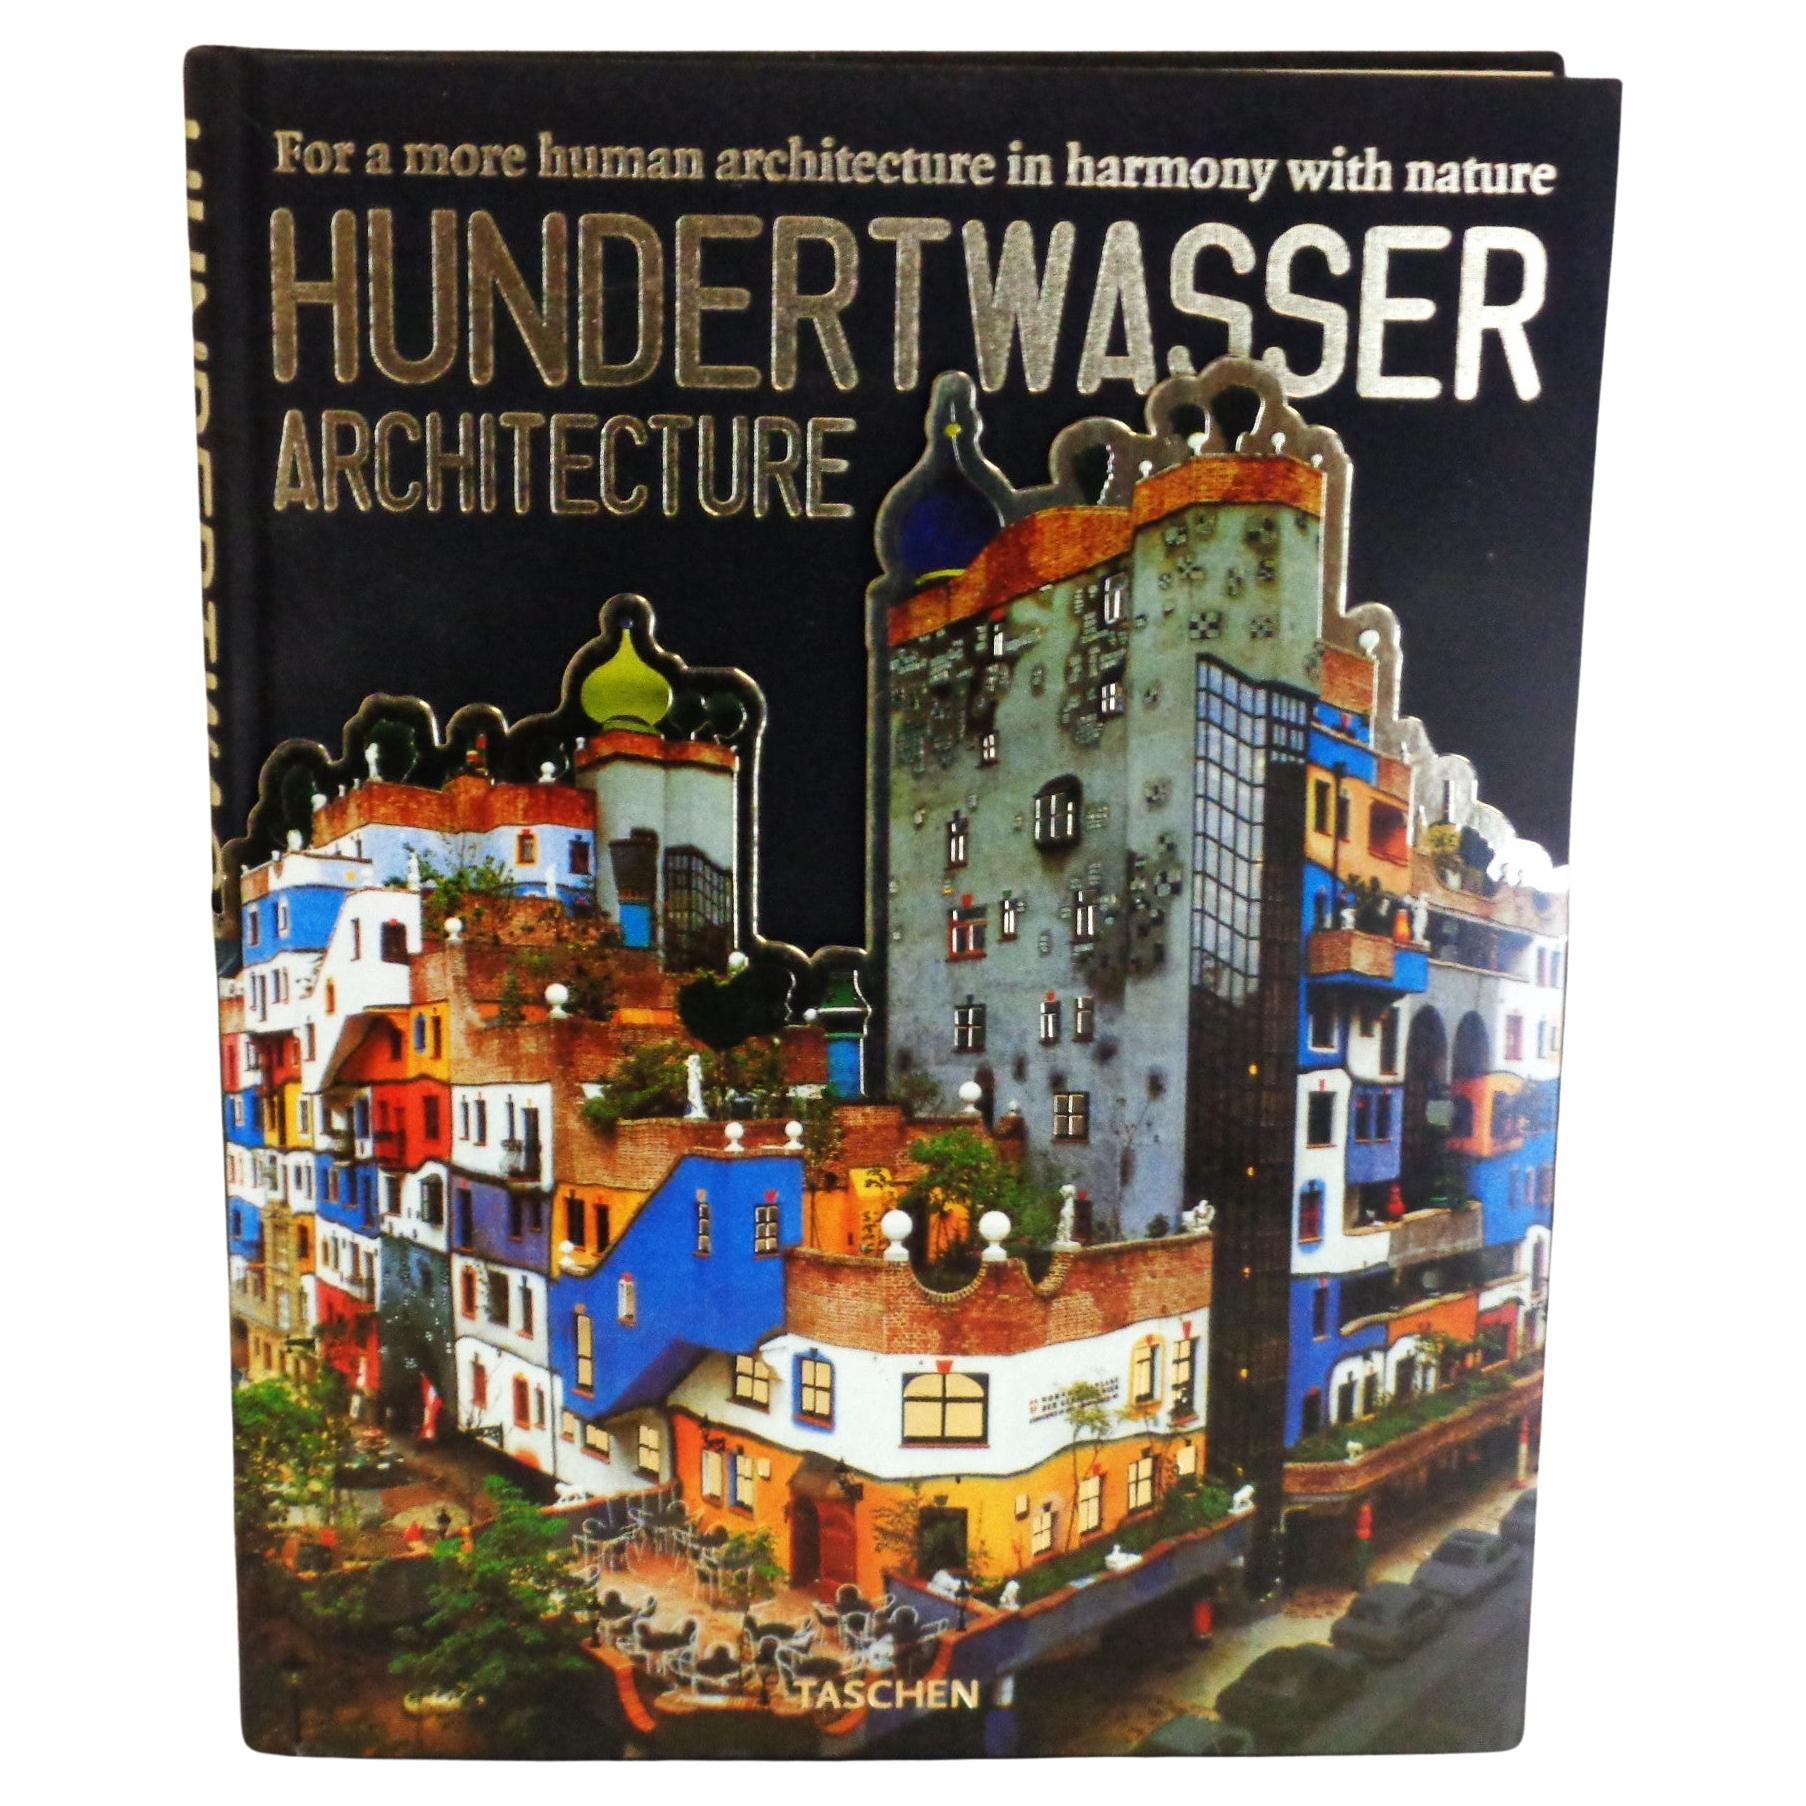 Hundertwasser Architecture - 1997 Taschen - 1st Edition For Sale